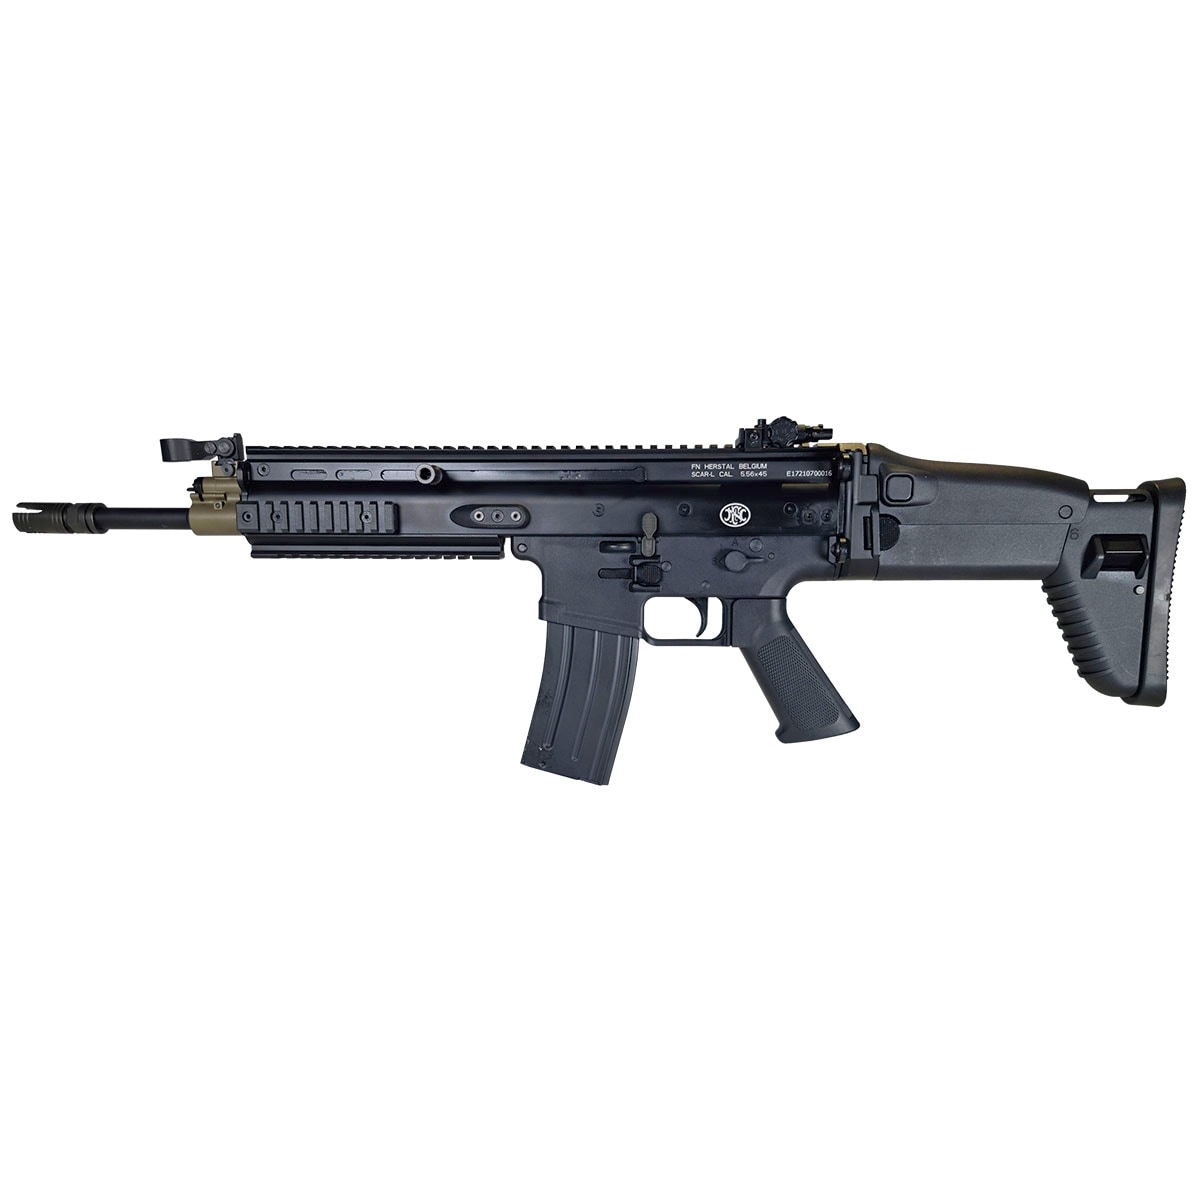 Karabinek szturmowy AEG Cybergun FN SCAR-L - Black